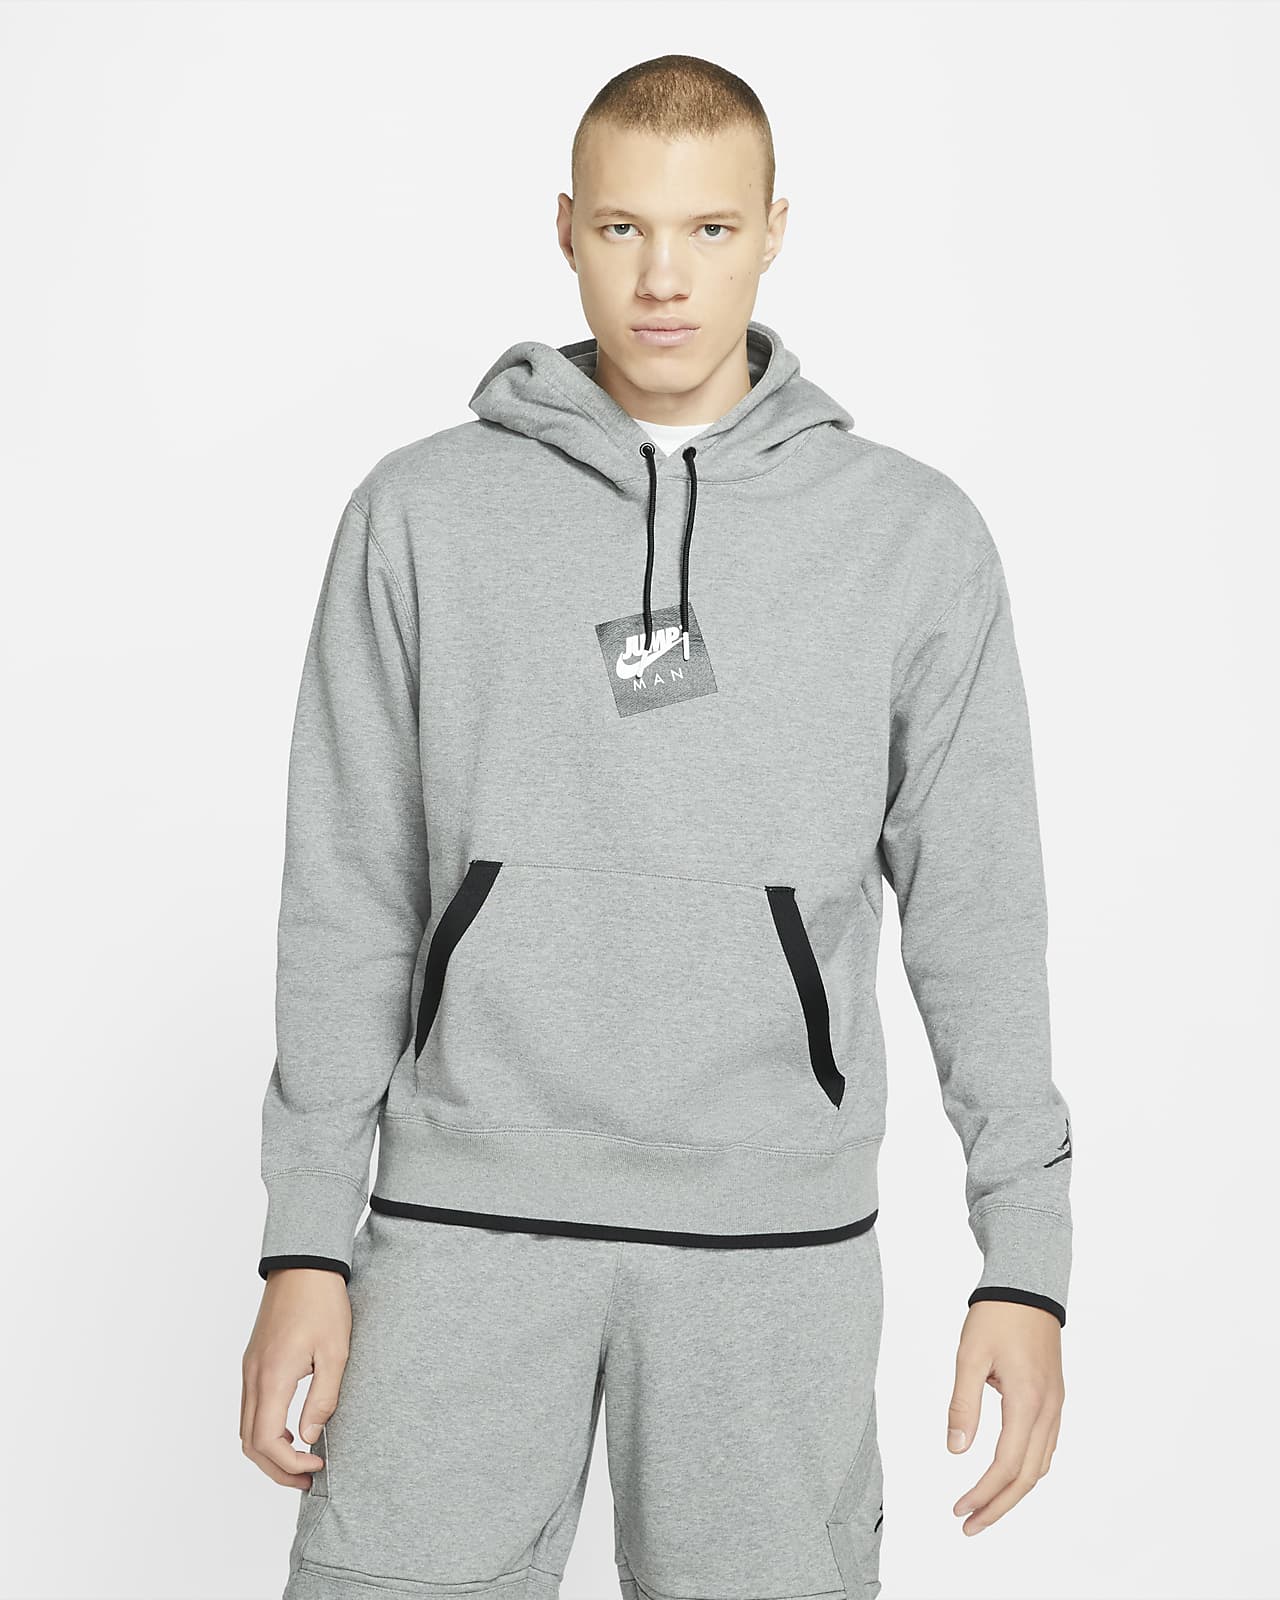 Printed Fleece Pullover Hoodie. Nike NL